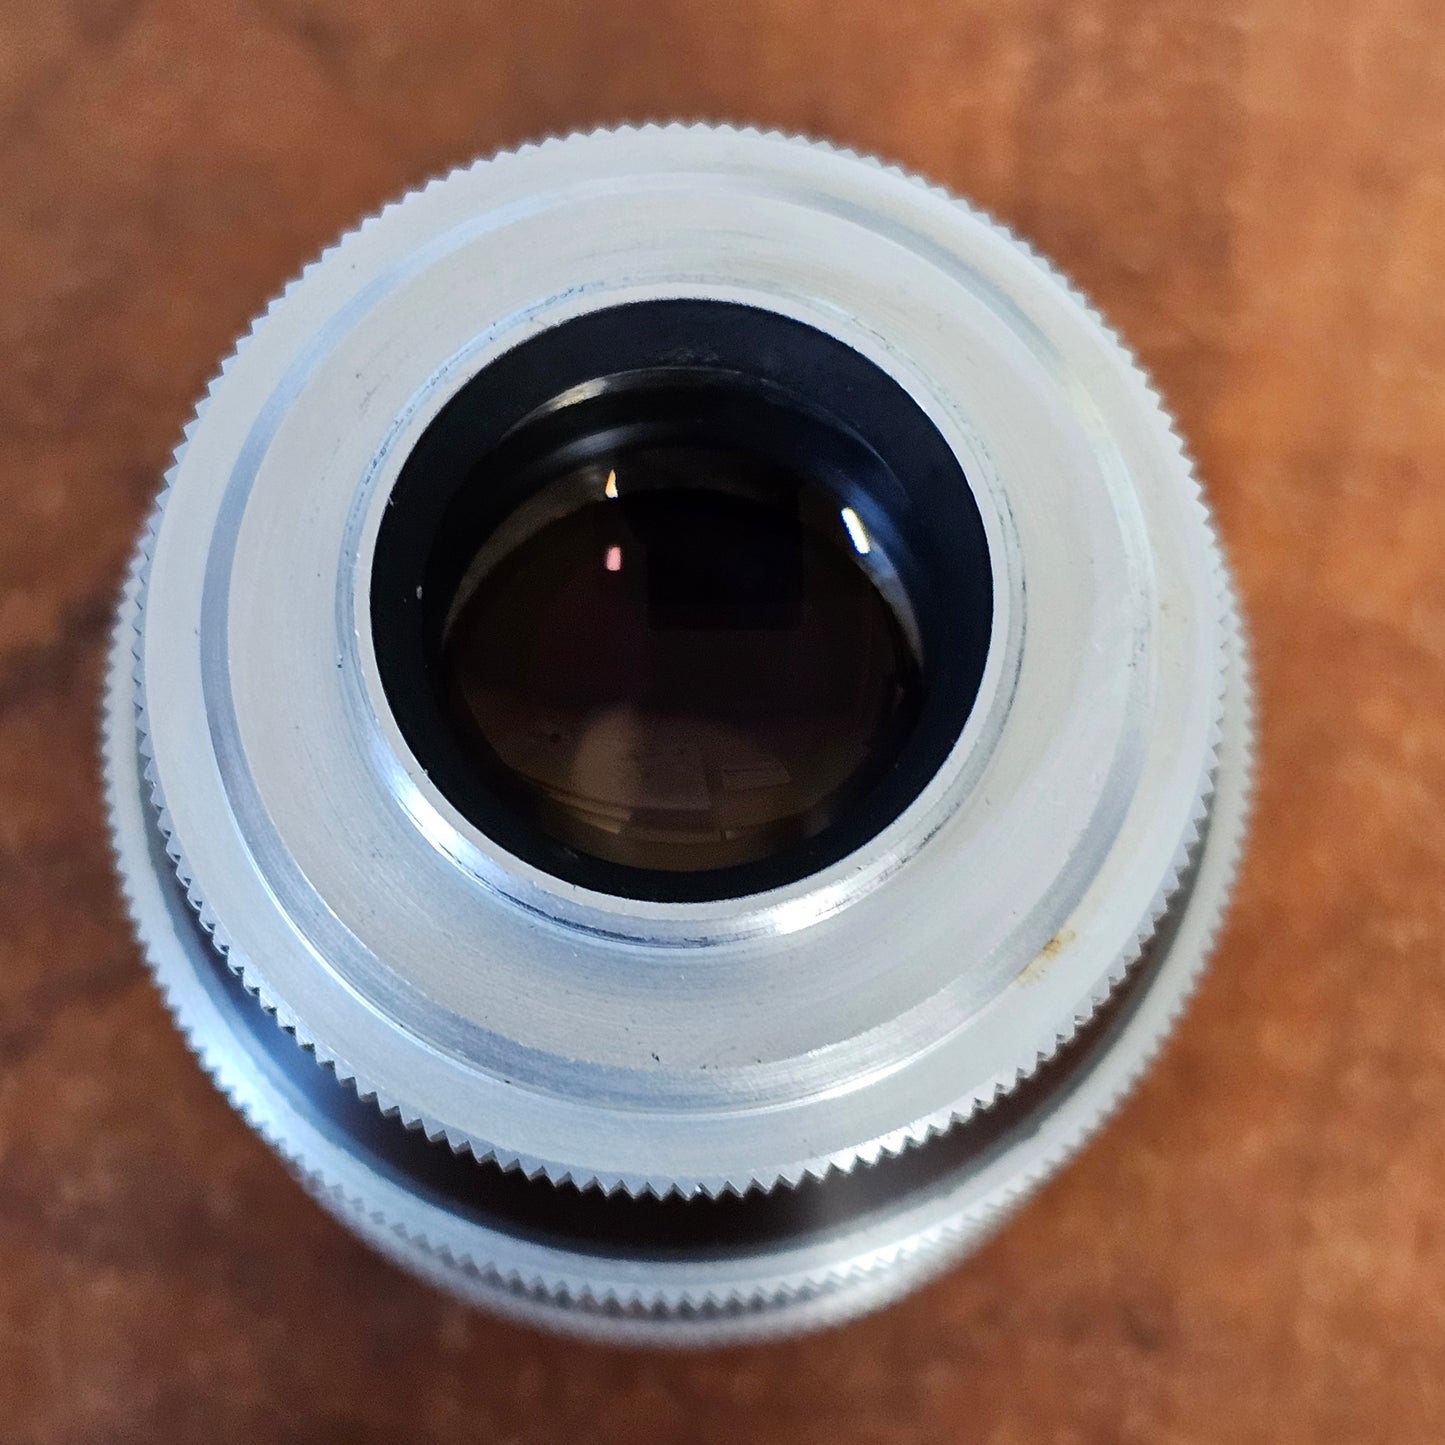 Switar 75mm f1.9 C-Mount Lens S# 1061376